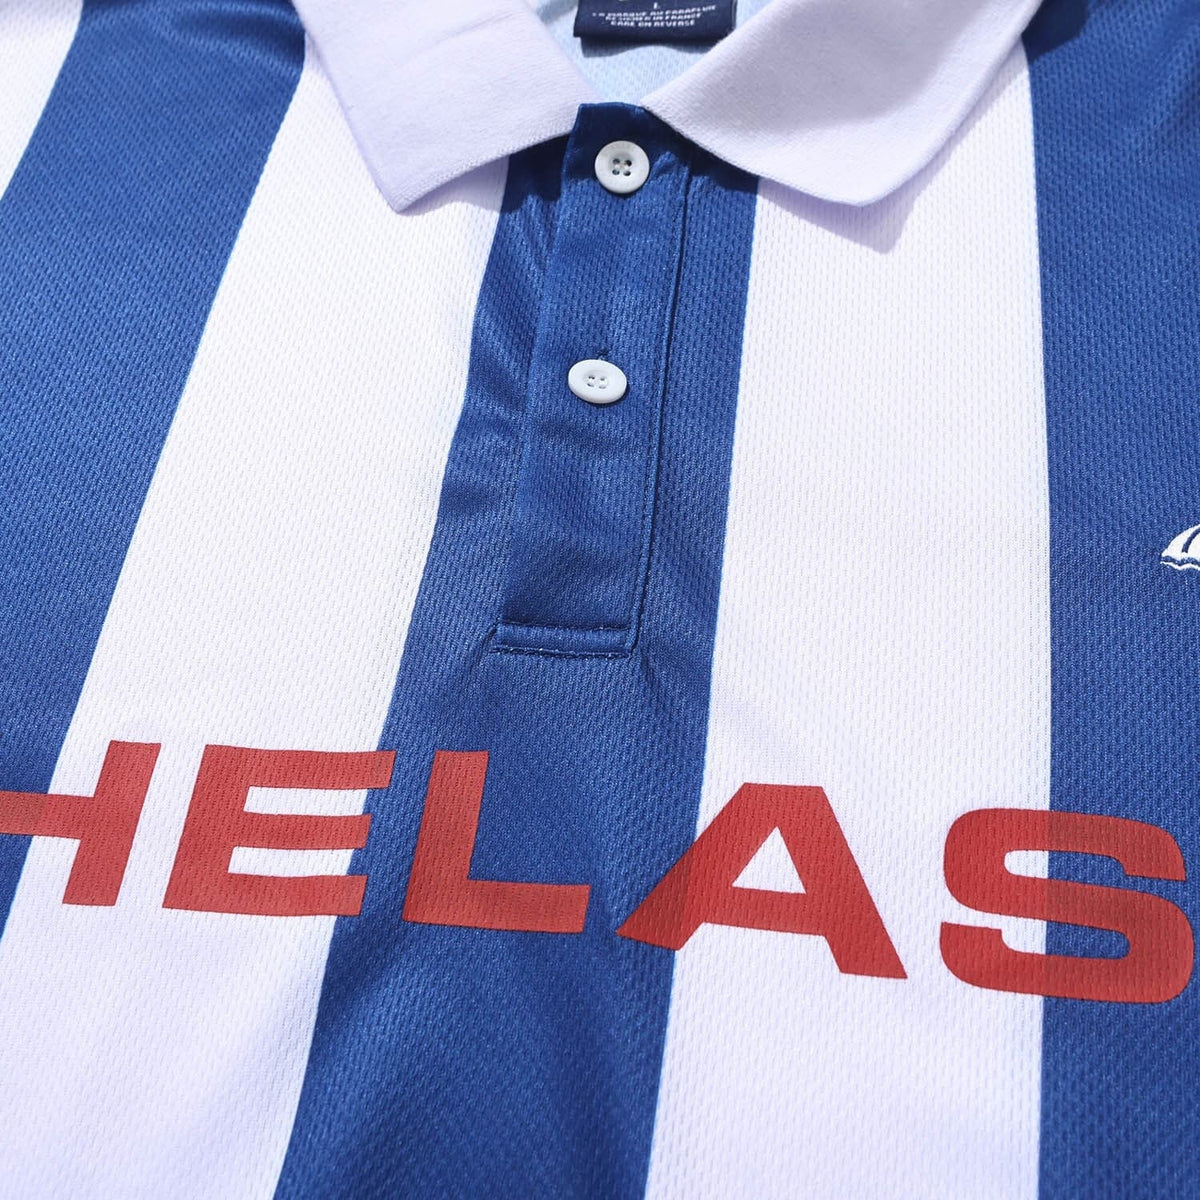 Helas Blokecore Longsleeve Polo Shirt - Blue